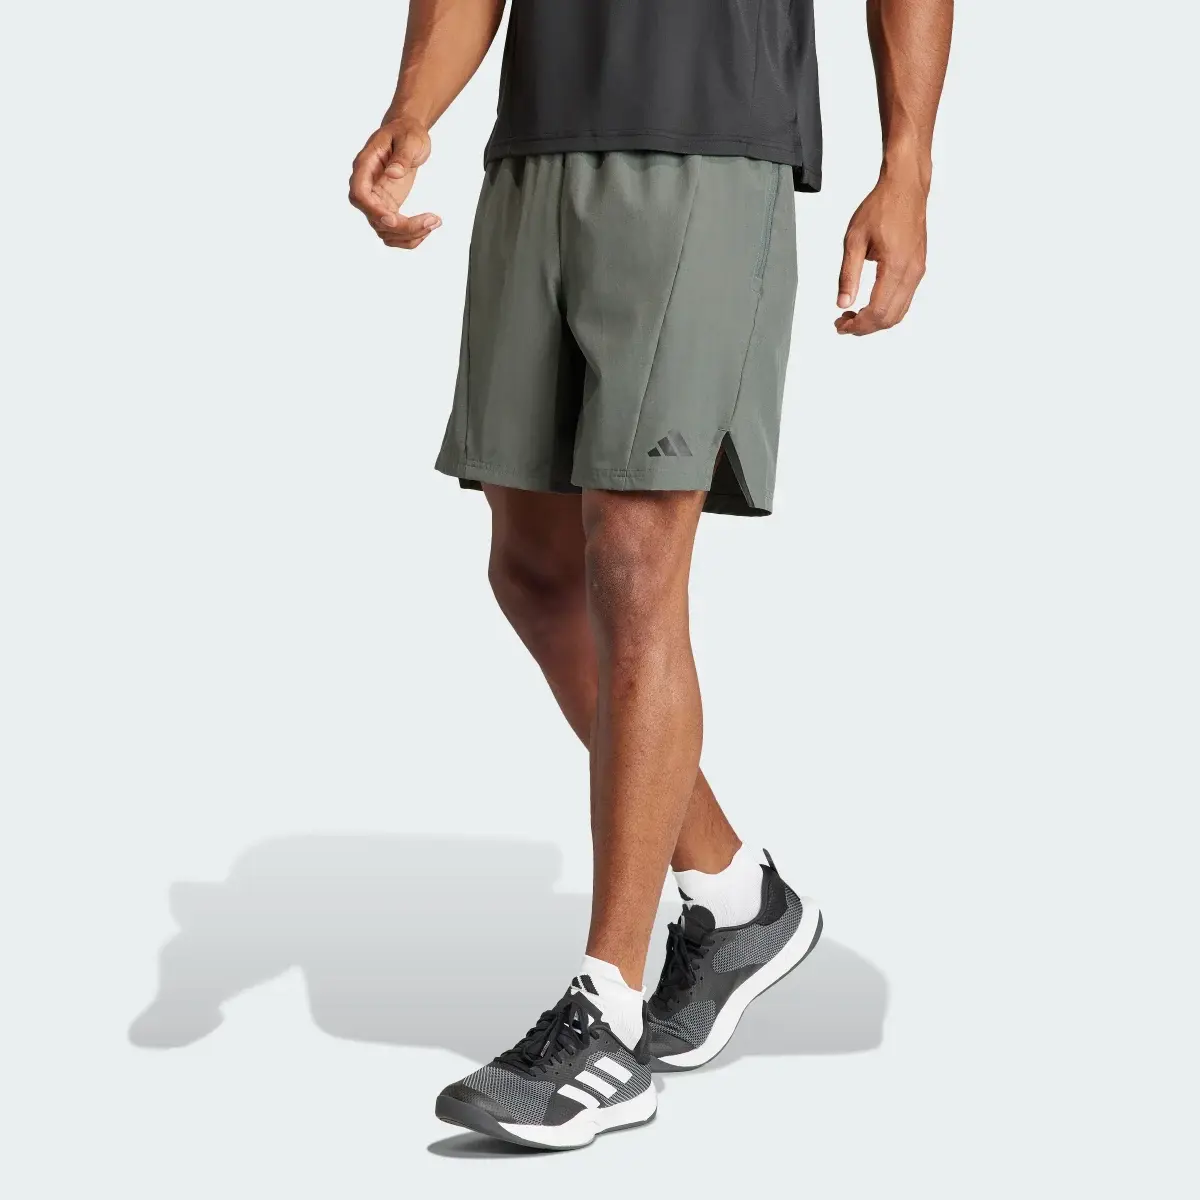 Adidas Designed for Training Workout Shorts. 1